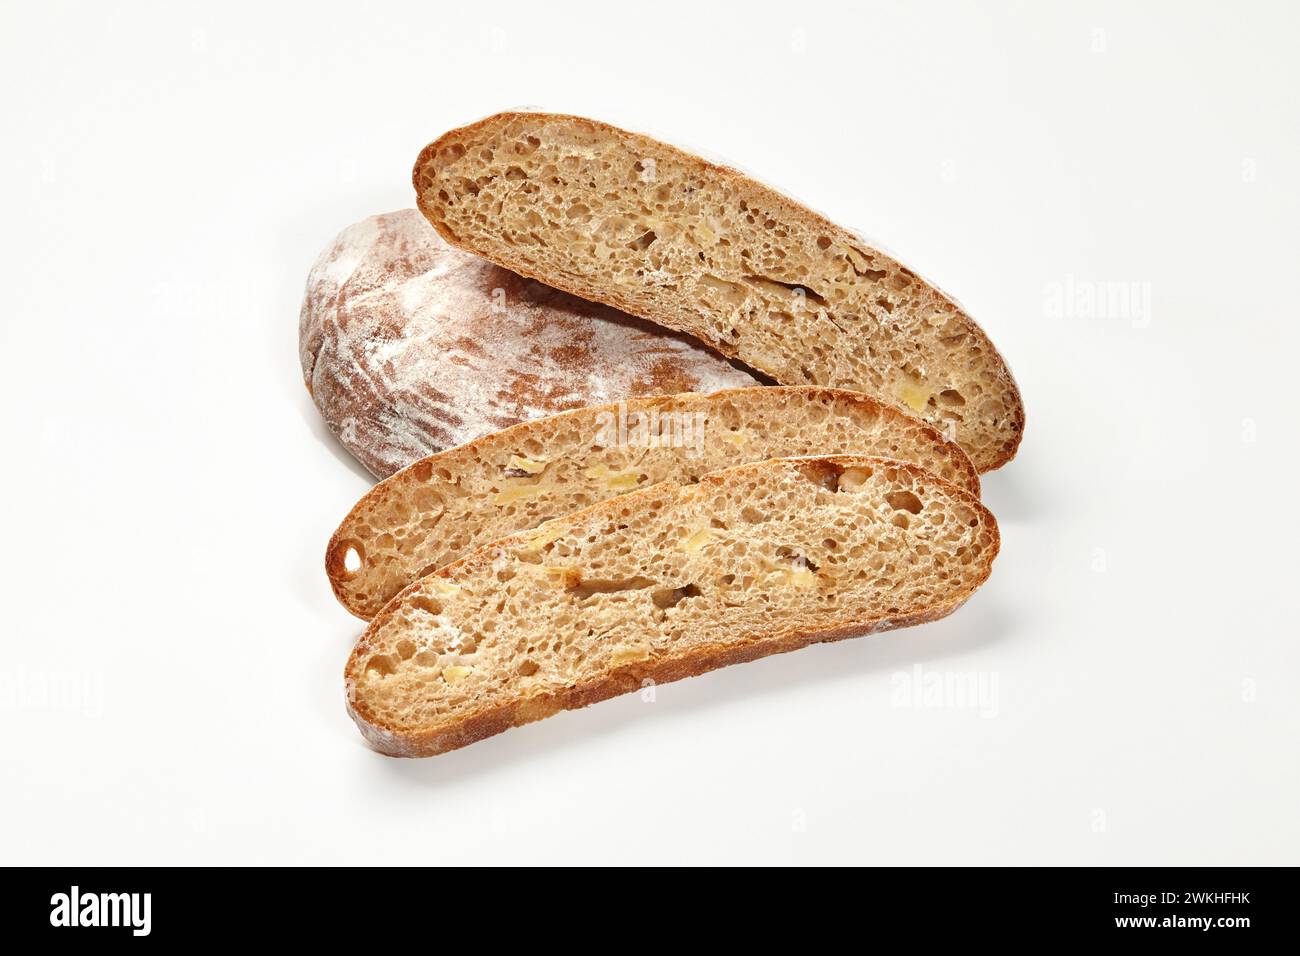 Ganze und in Scheiben geschnittene Laibe von Weizenbrot mit knuspriger bräunlicher Kruste und luftiger Textur auf weißem Hintergrund. Bäckerei- und Brotbackkonzept Stockfoto